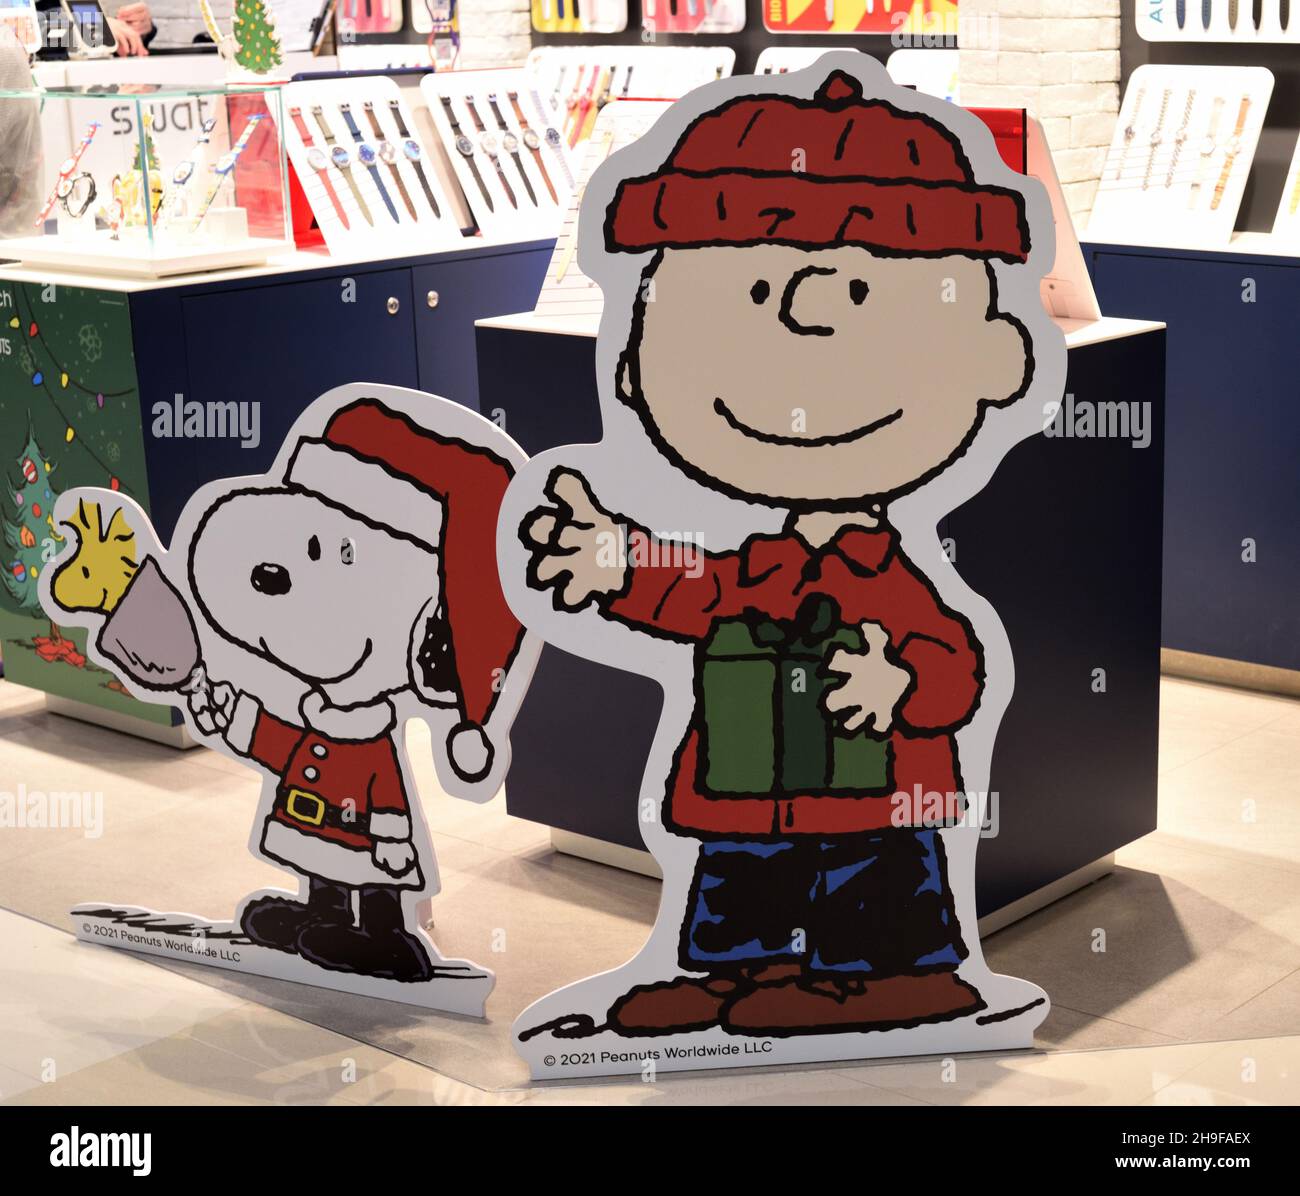 Personnages en carton de Charlie Brown et Snoopy souriants en costume de Noël pour accueillir les clients dans une salle de shopping, Hong Kong. Banque D'Images